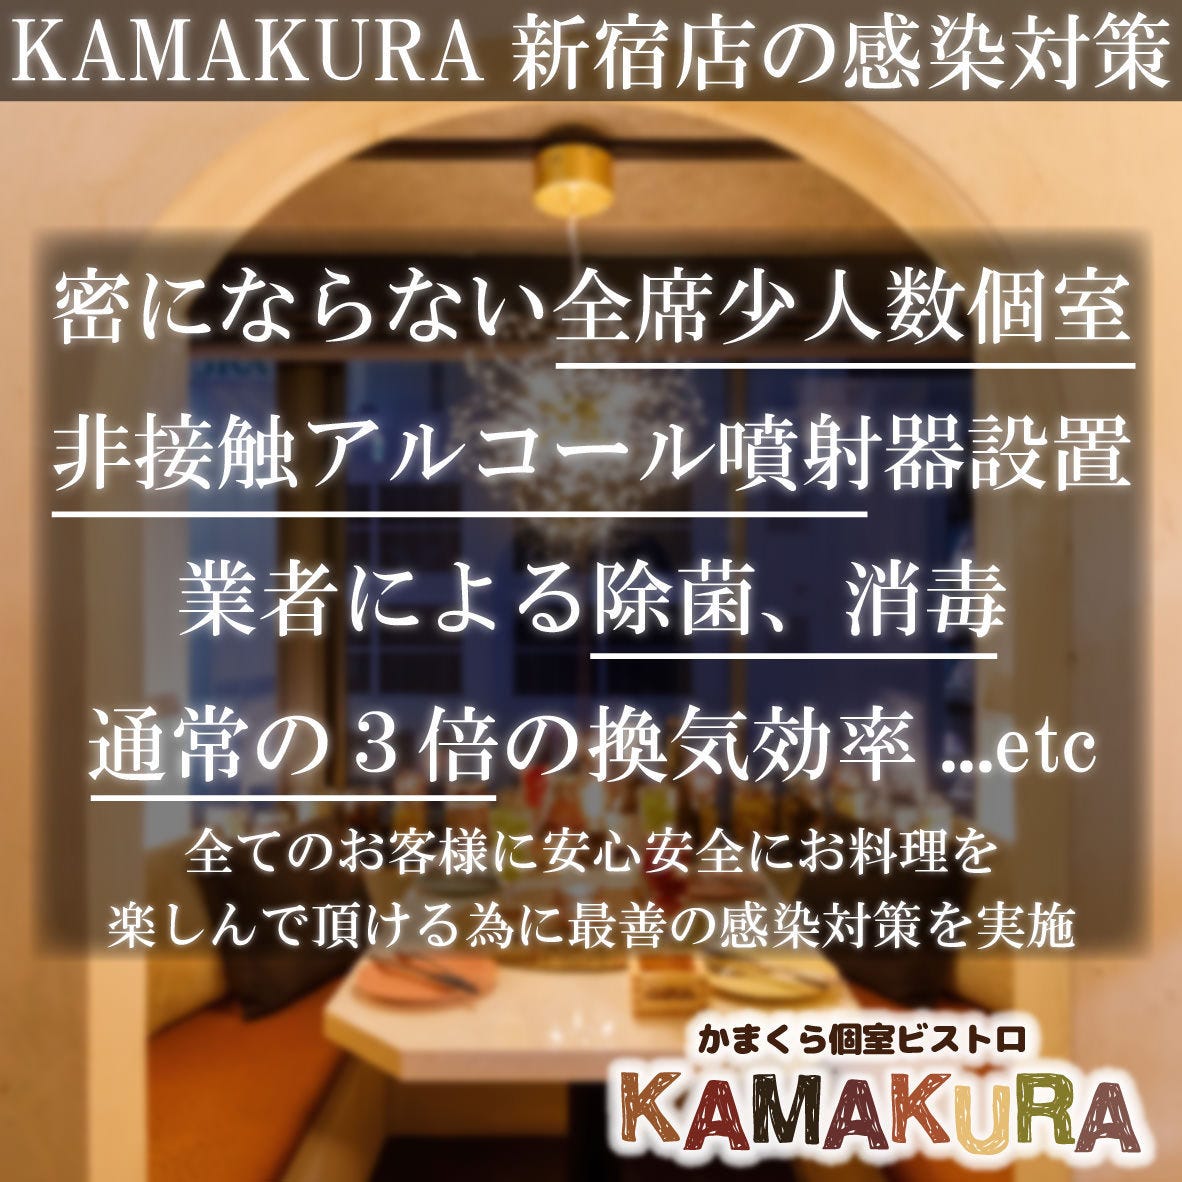 かまくら個室ビストロ KAMAKURA 新宿店